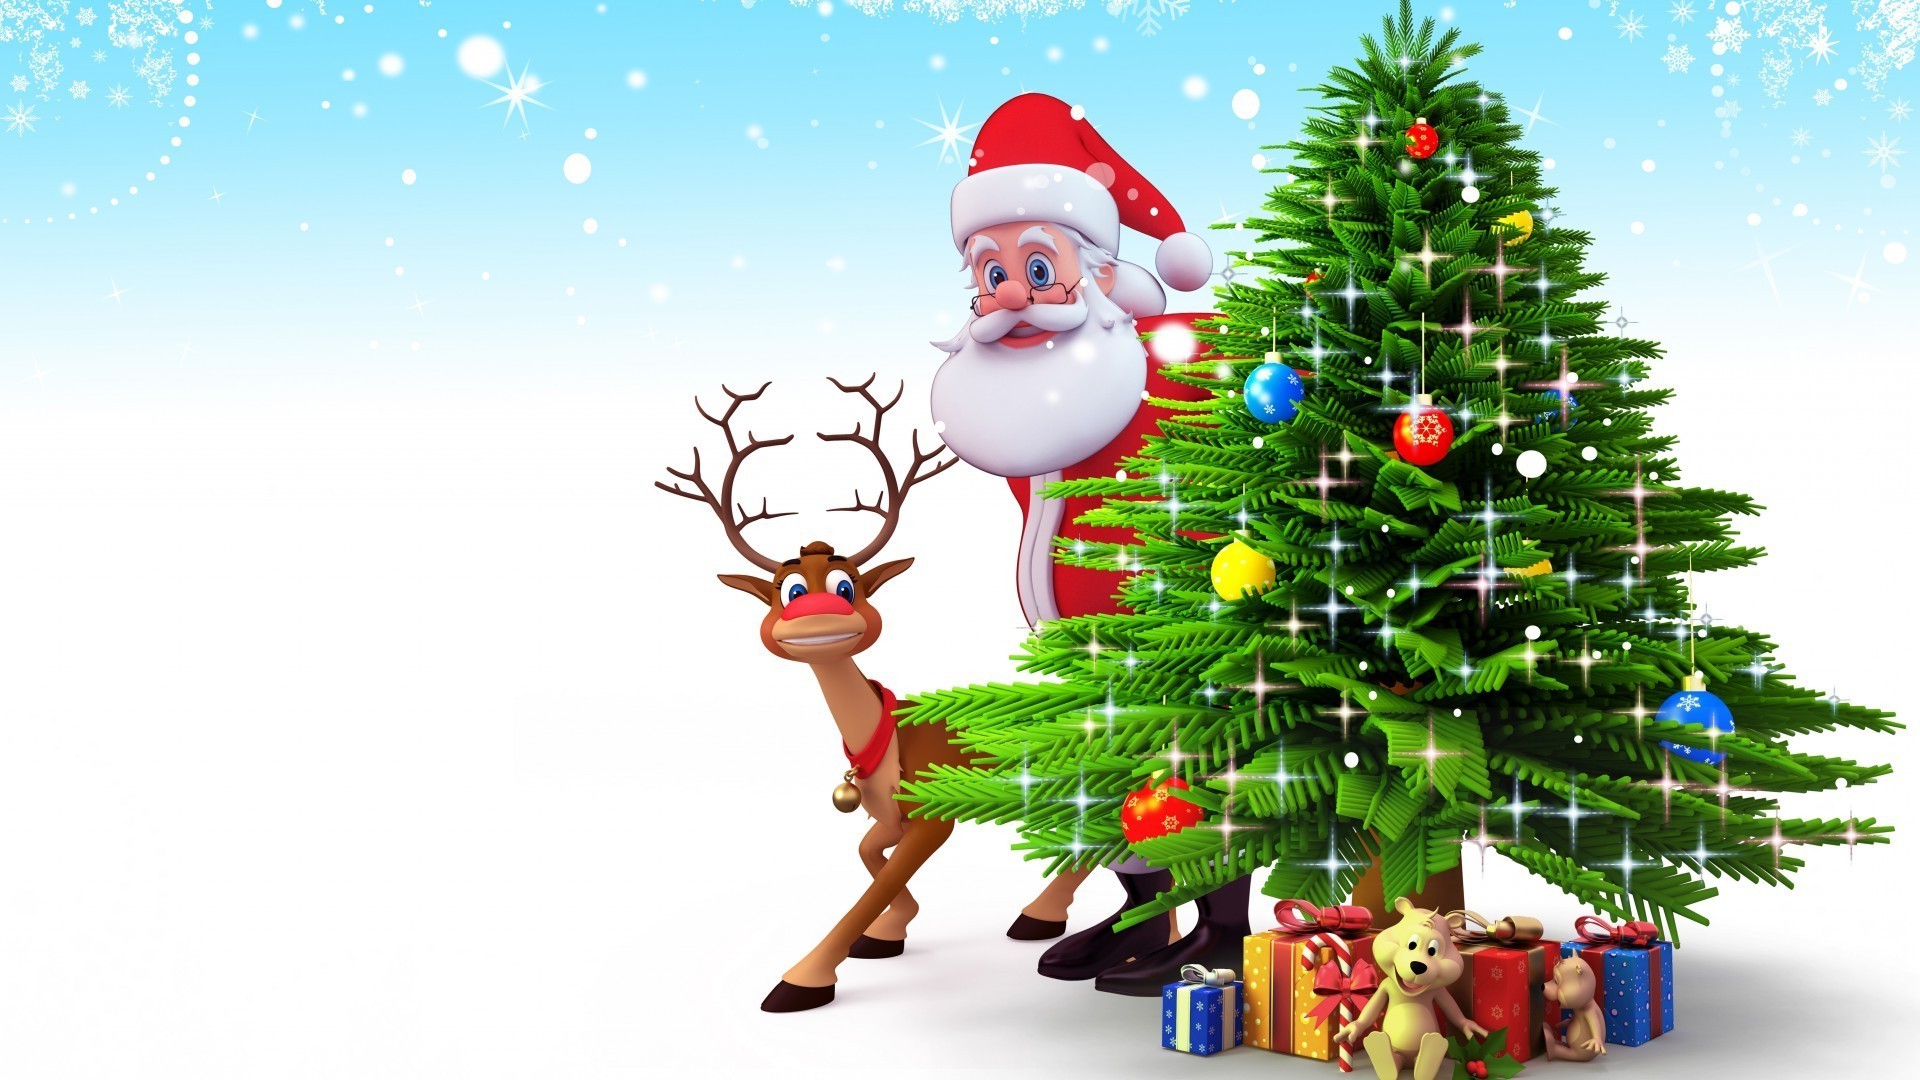 новый год рождество зима праздник мерри ева рождественская елка украшения дерево подарок сезон снег холли светит пихта отпуск сосна удовольствие